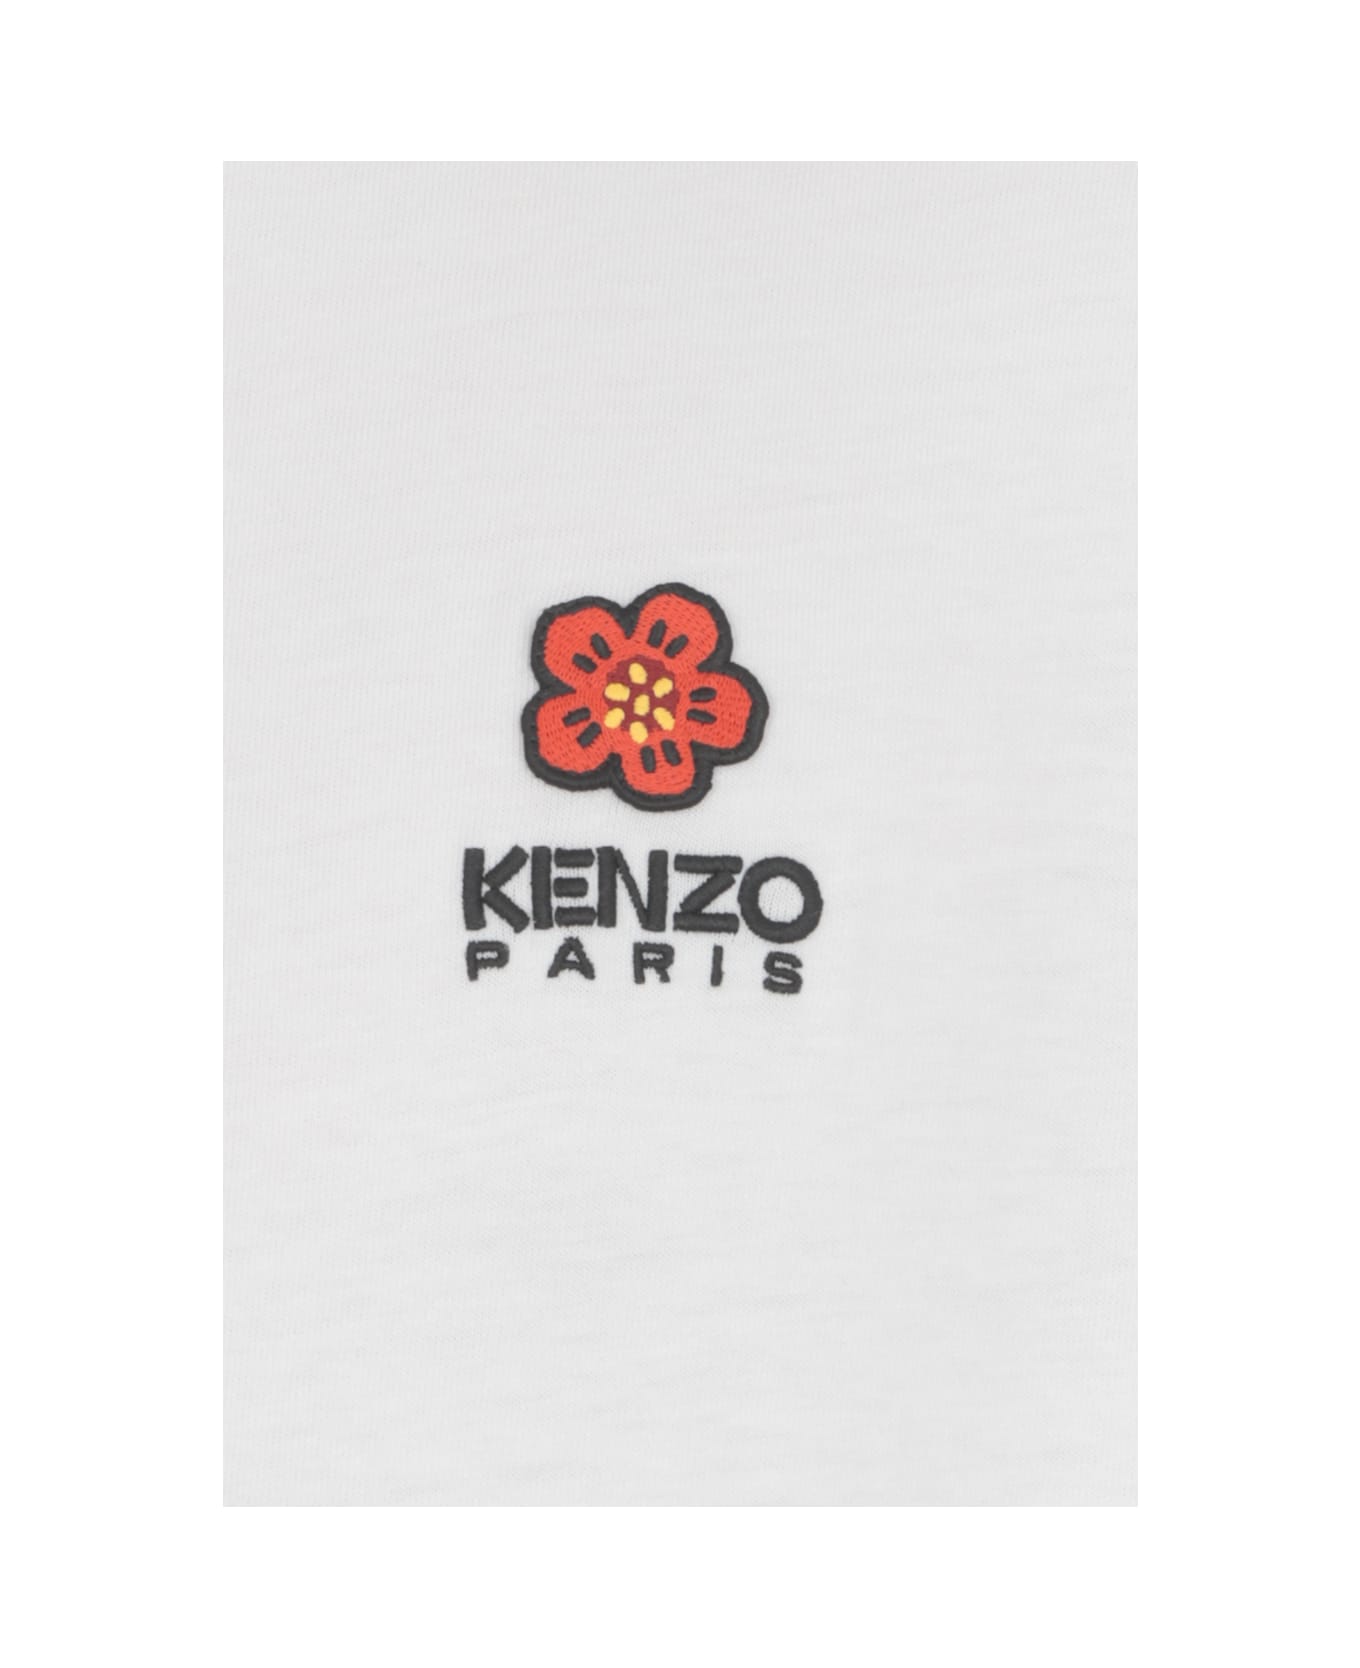 Kenzo Boke Flower T-shirt - White